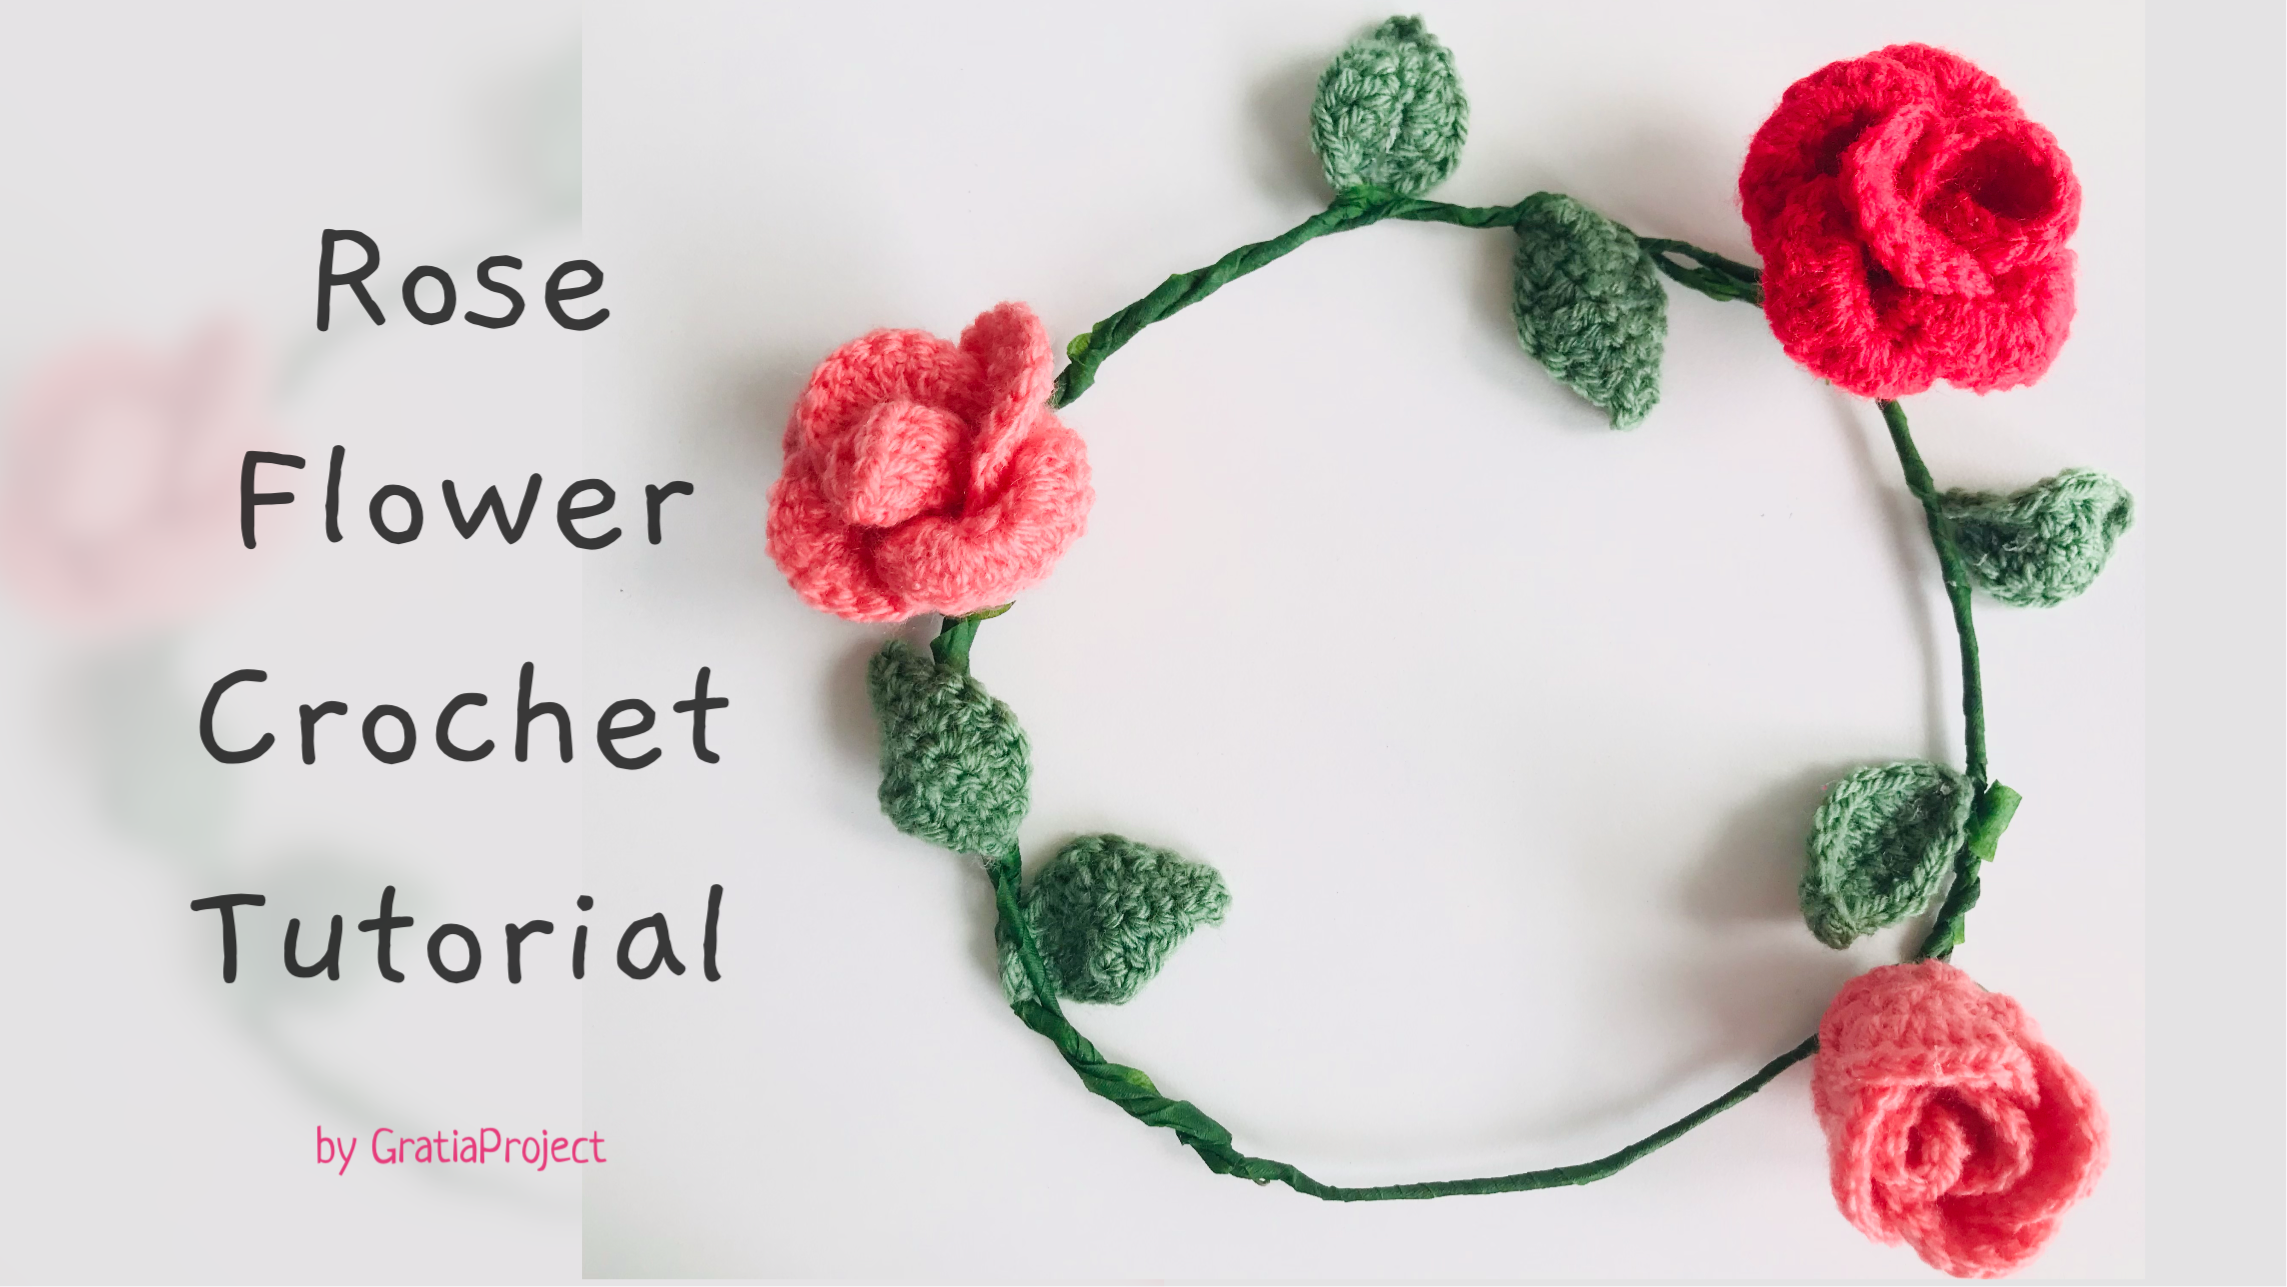 Rose Flower Crochet Tutorial | Crochet Along Easy & Fast